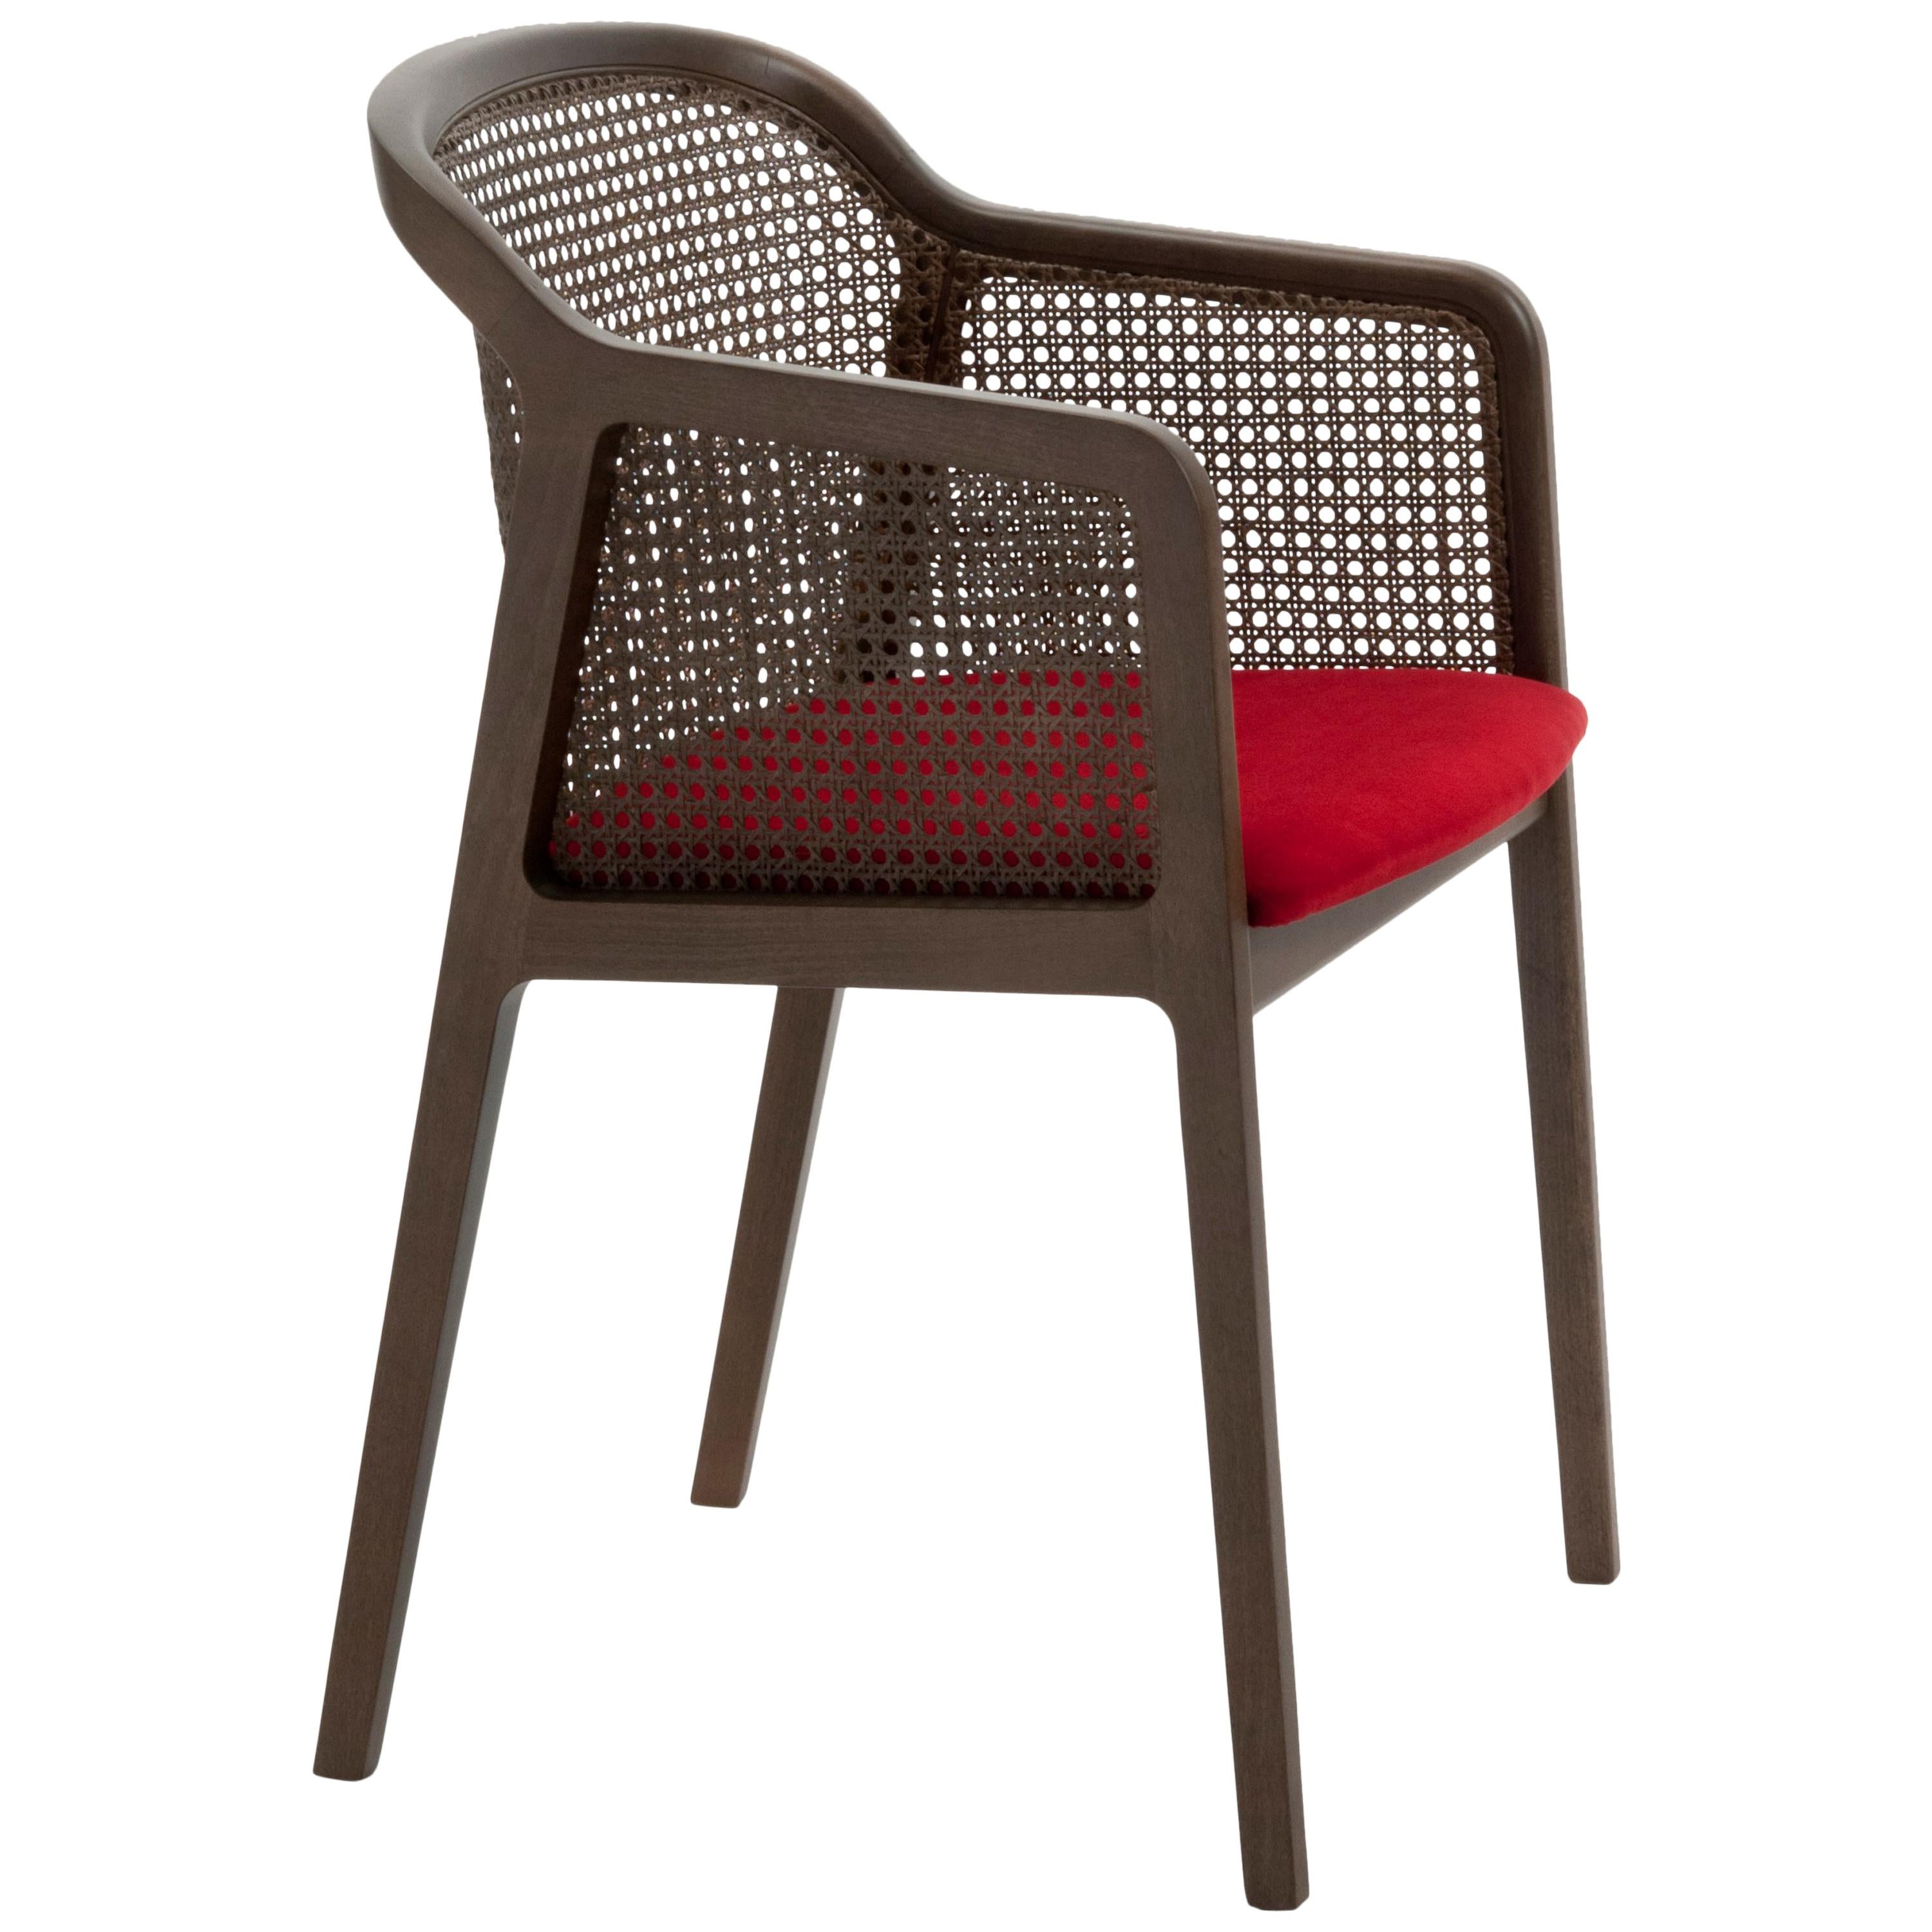 Vienna ist ein außerordentlich komfortabler und eleganter Sessel, der von Emmanuel Gallina entworfen wurde, der gerne Brancusi zitiert, wenn er sagt, dass 